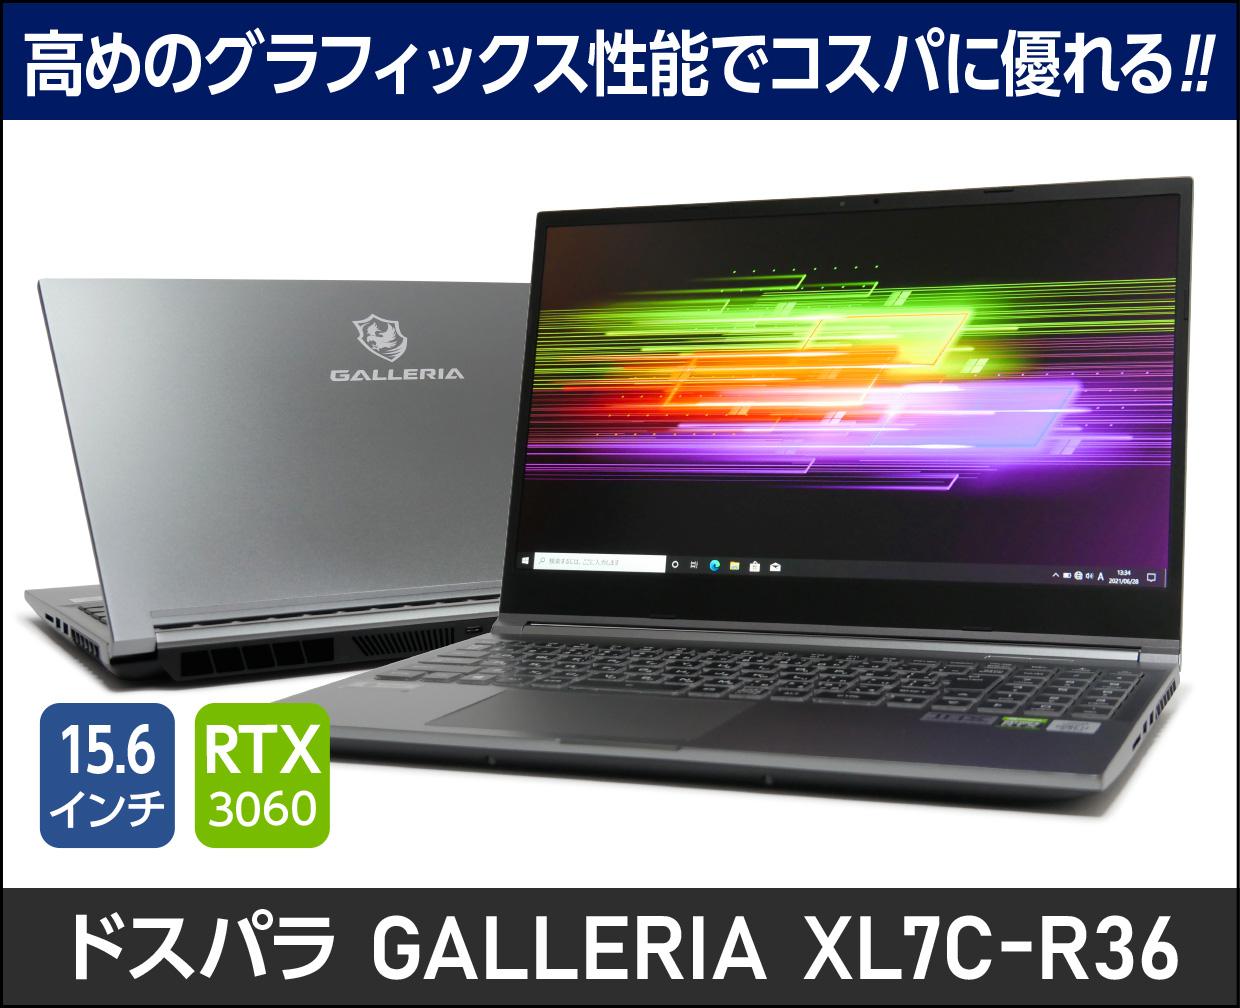 GALLERIA XL7C-R36 Core i7 11800H/RTX 3060/15.6インチ フルHD 144Hz 